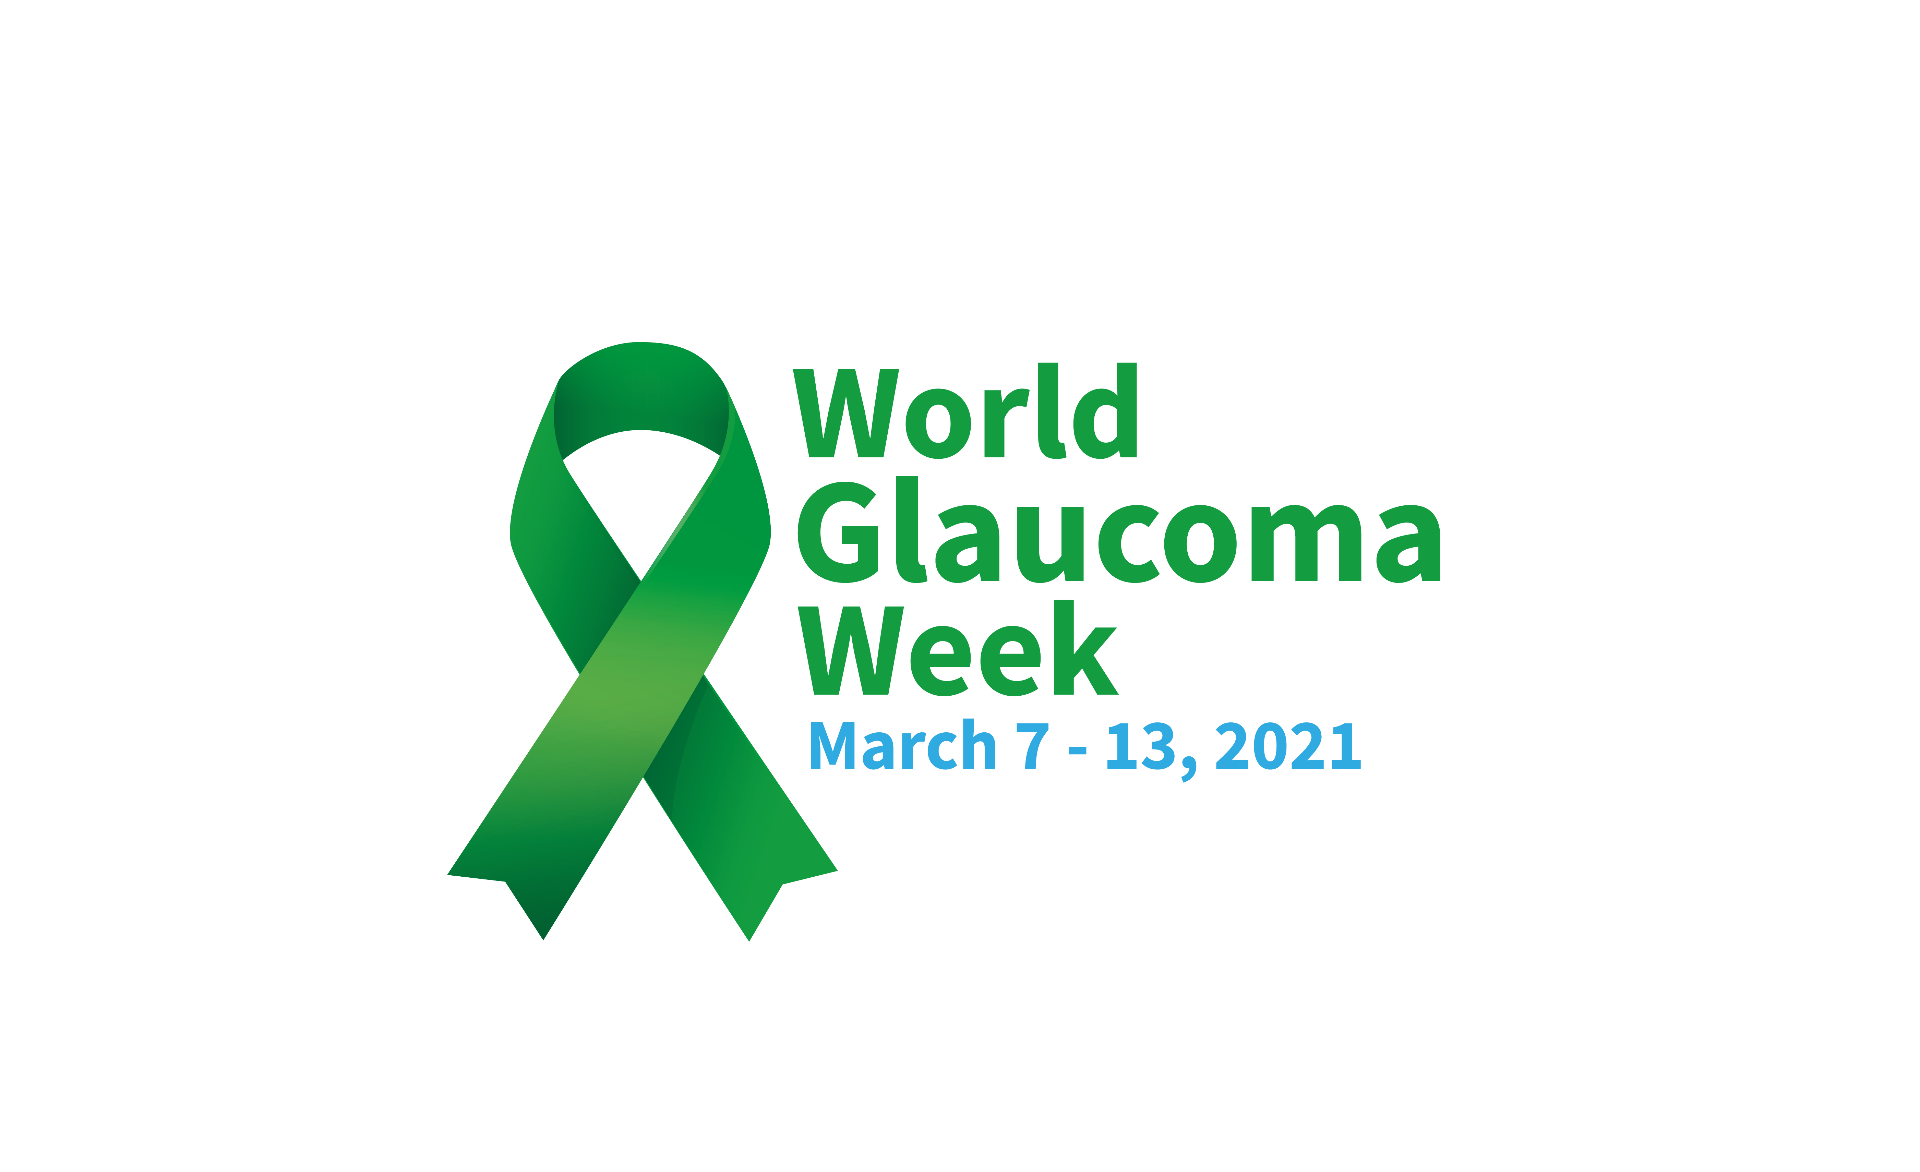 Săptămâna Mondială a Glaucomului, marcată între 7 și 13 martie